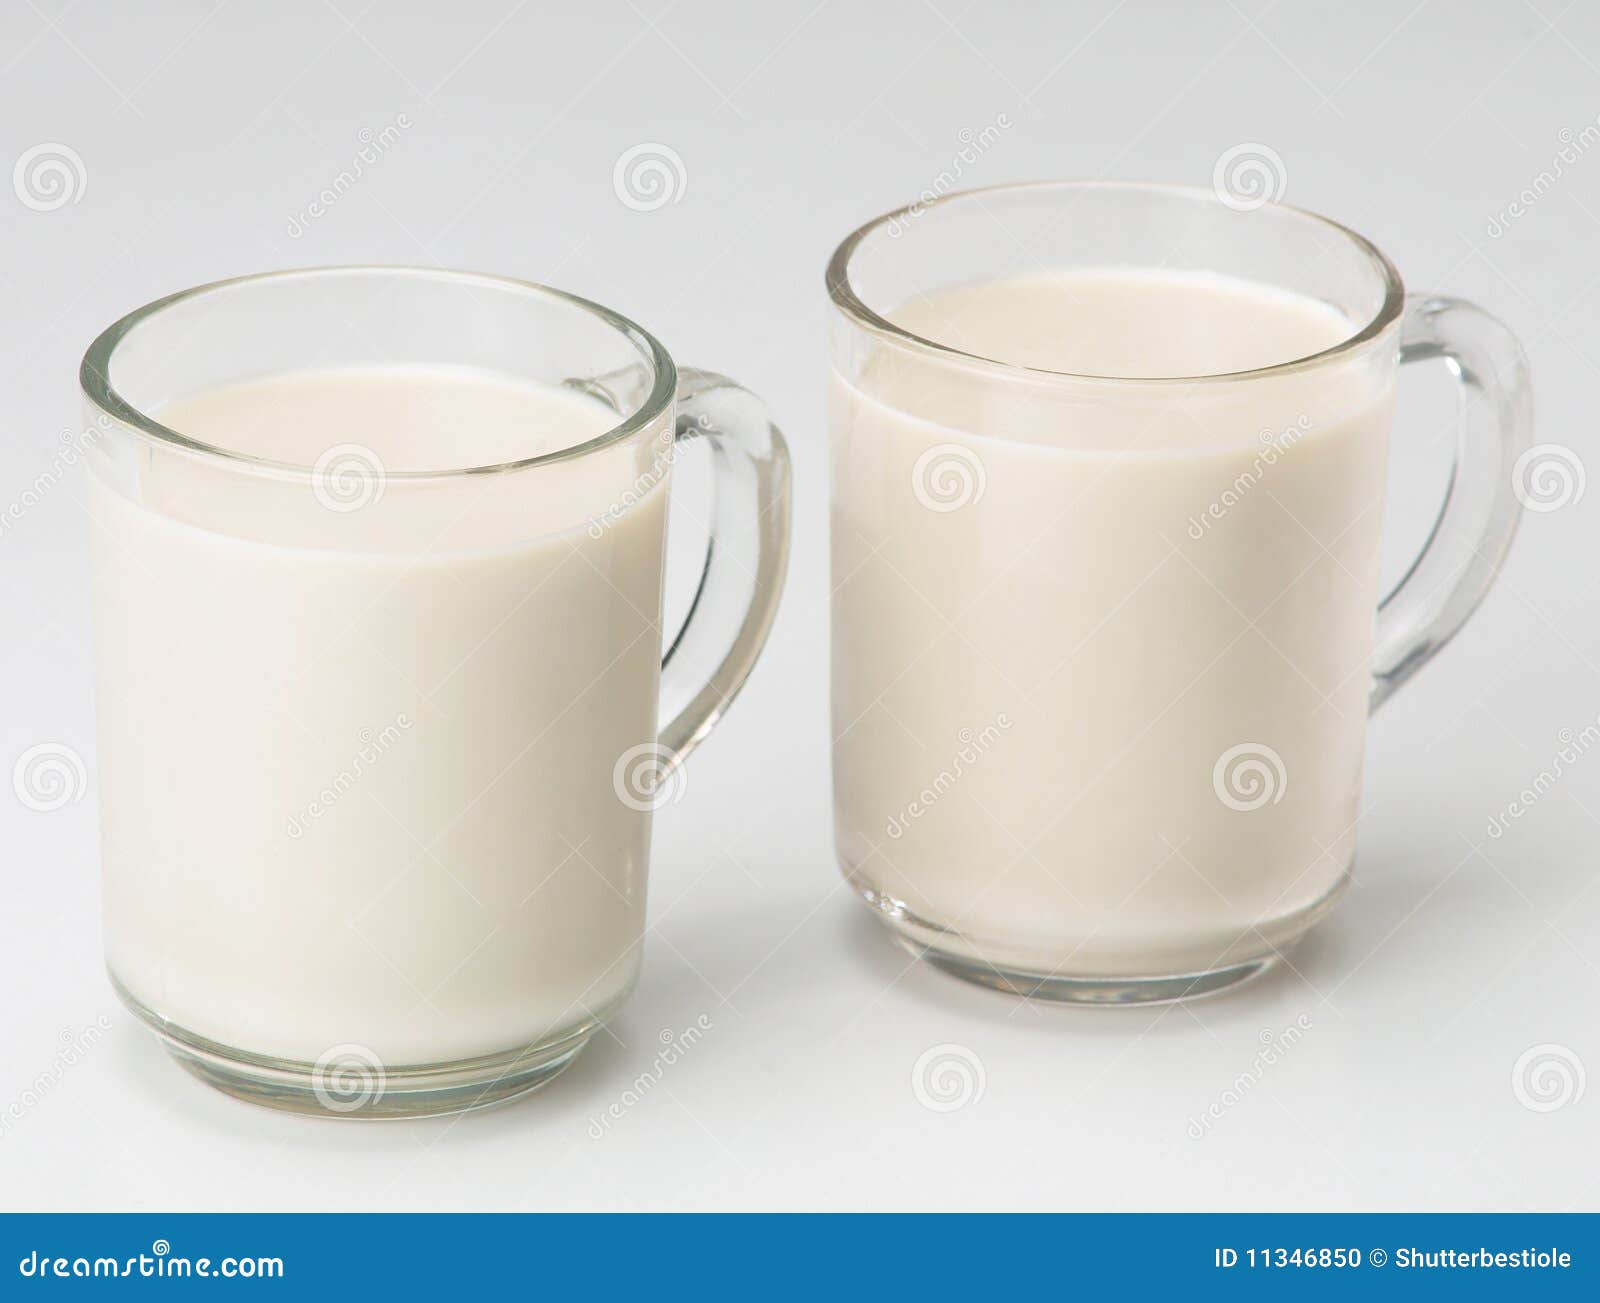  Milk  Stock Photo Image 11346850